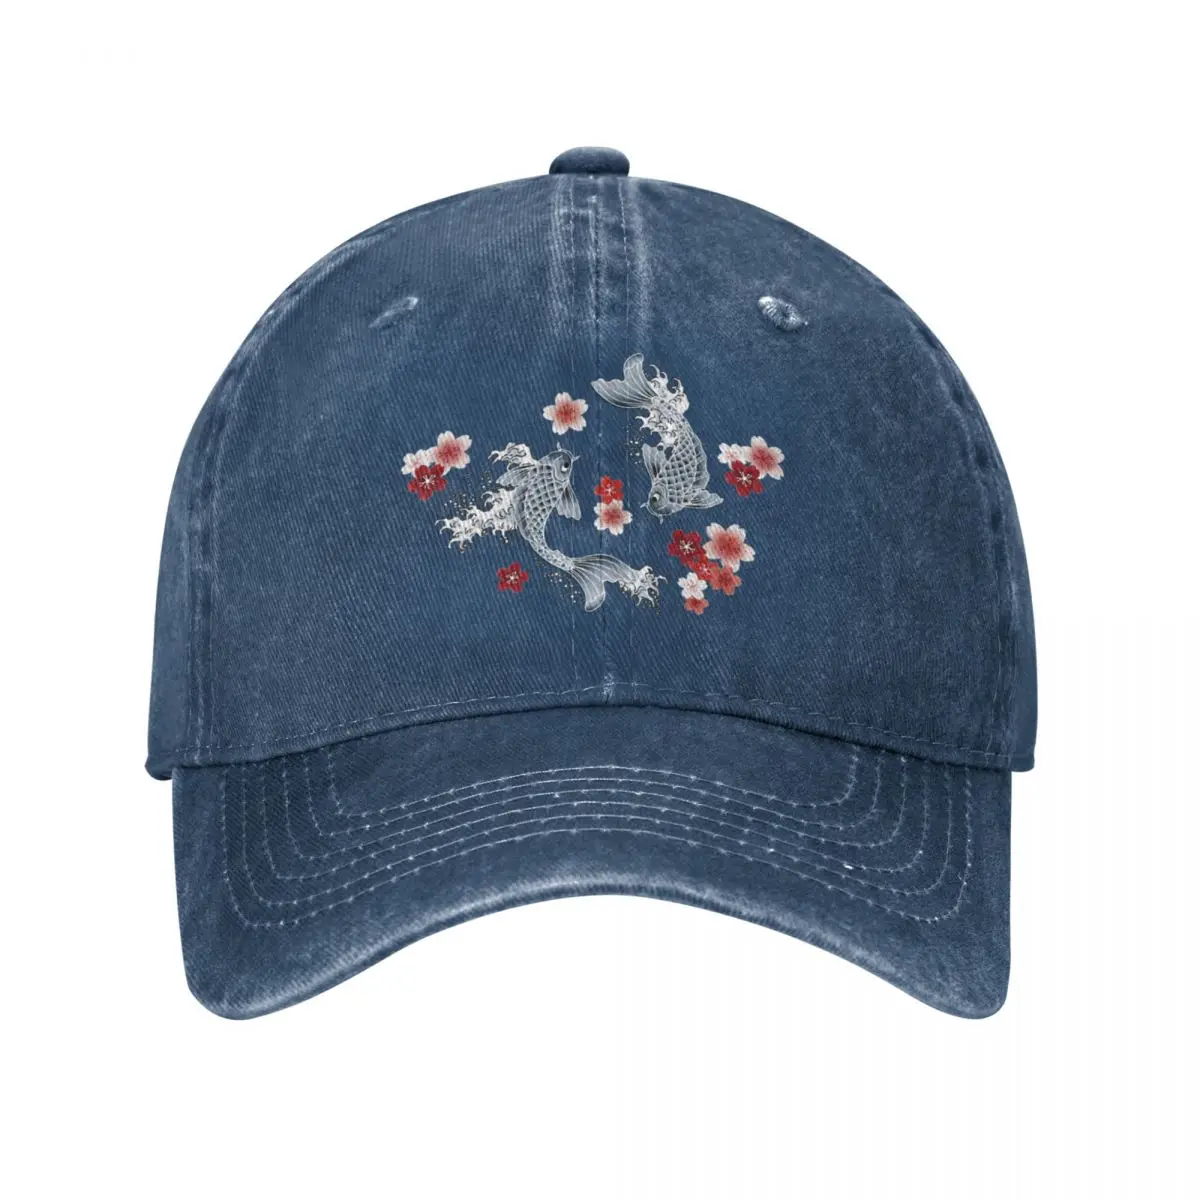 

Koi sakura blossom in blue Cap Cowboy Hat Cap winter Hat for girls Men's